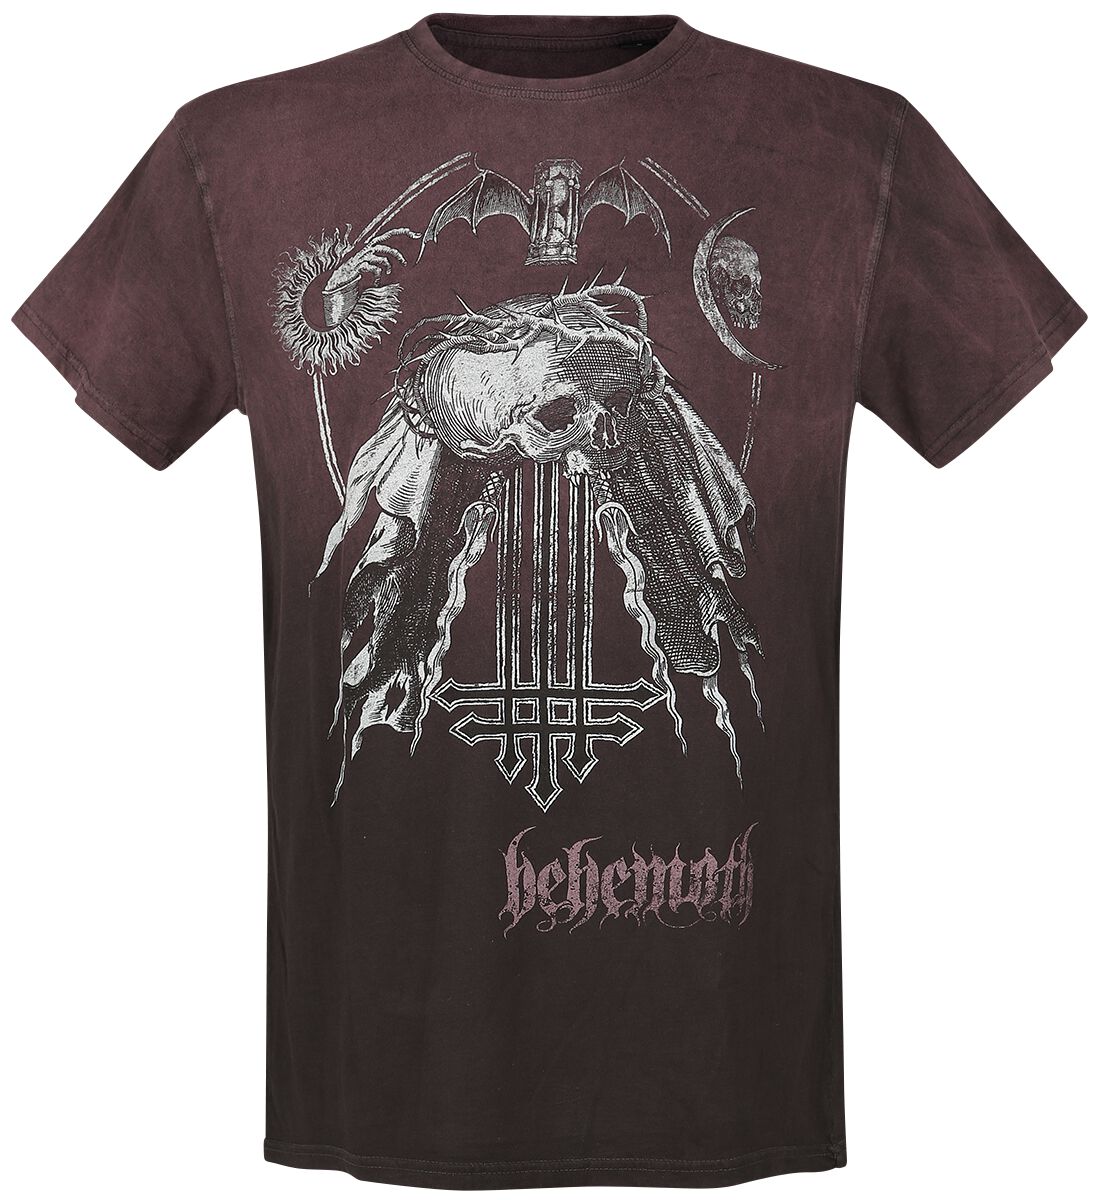 Image of Behemoth Profane Skull T-Shirt bordeaux